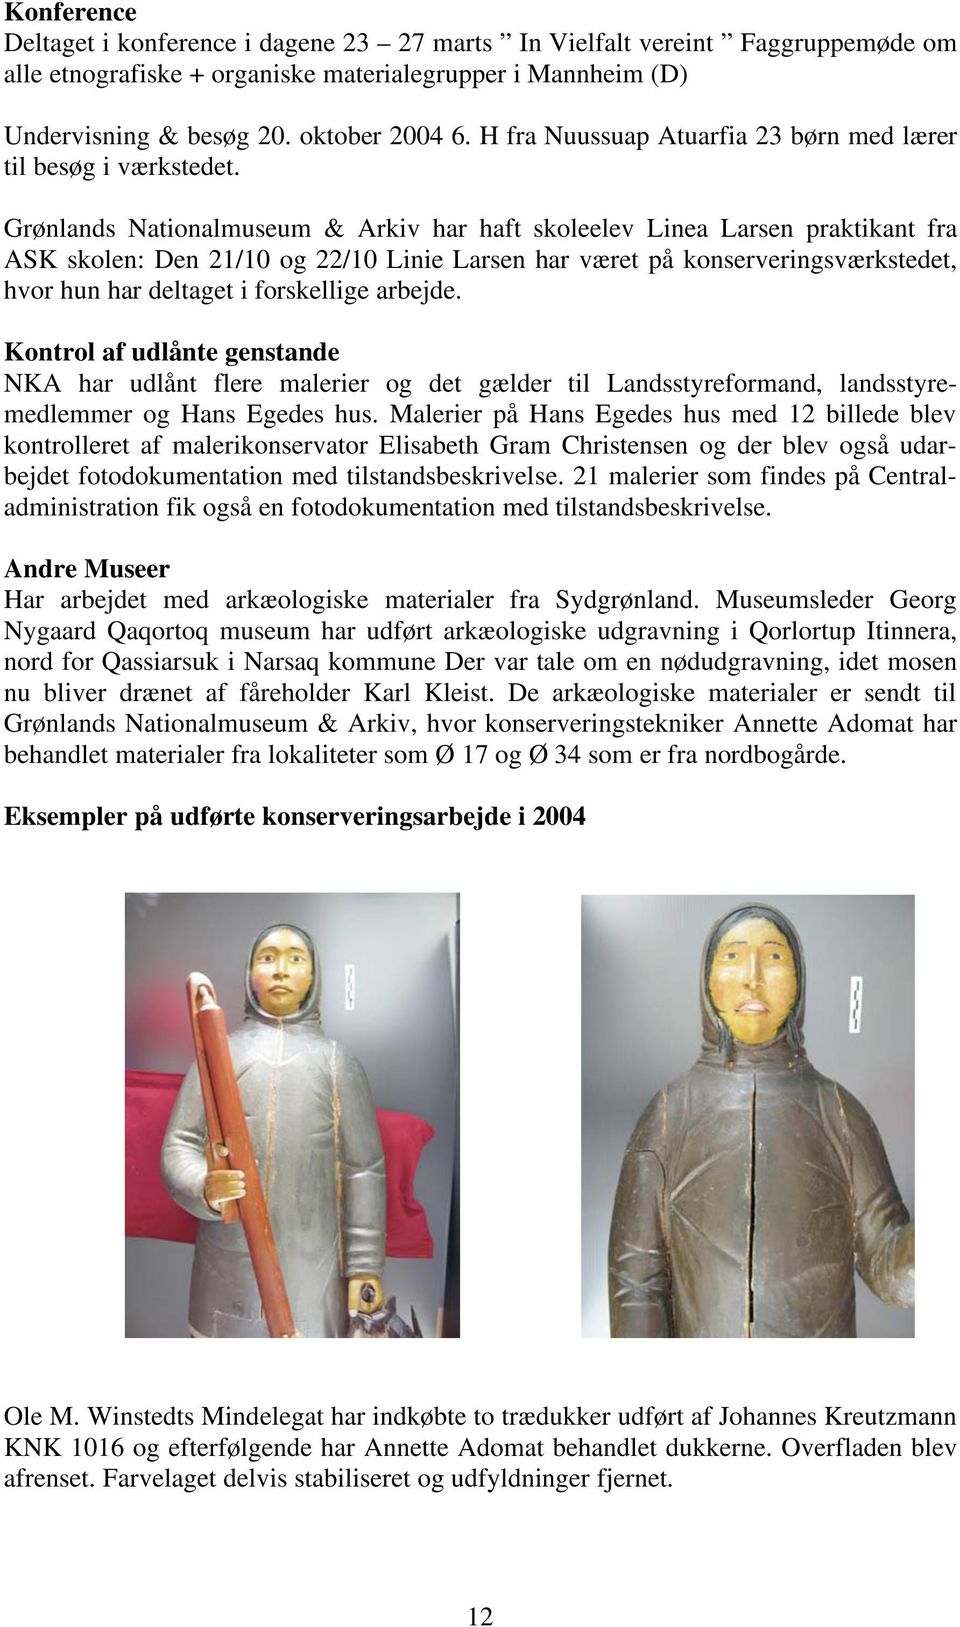 Grønlands Nationalmuseum & Arkiv har haft skoleelev Linea Larsen praktikant fra ASK skolen: Den 21/10 og 22/10 Linie Larsen har været på konserveringsværkstedet, hvor hun har deltaget i forskellige